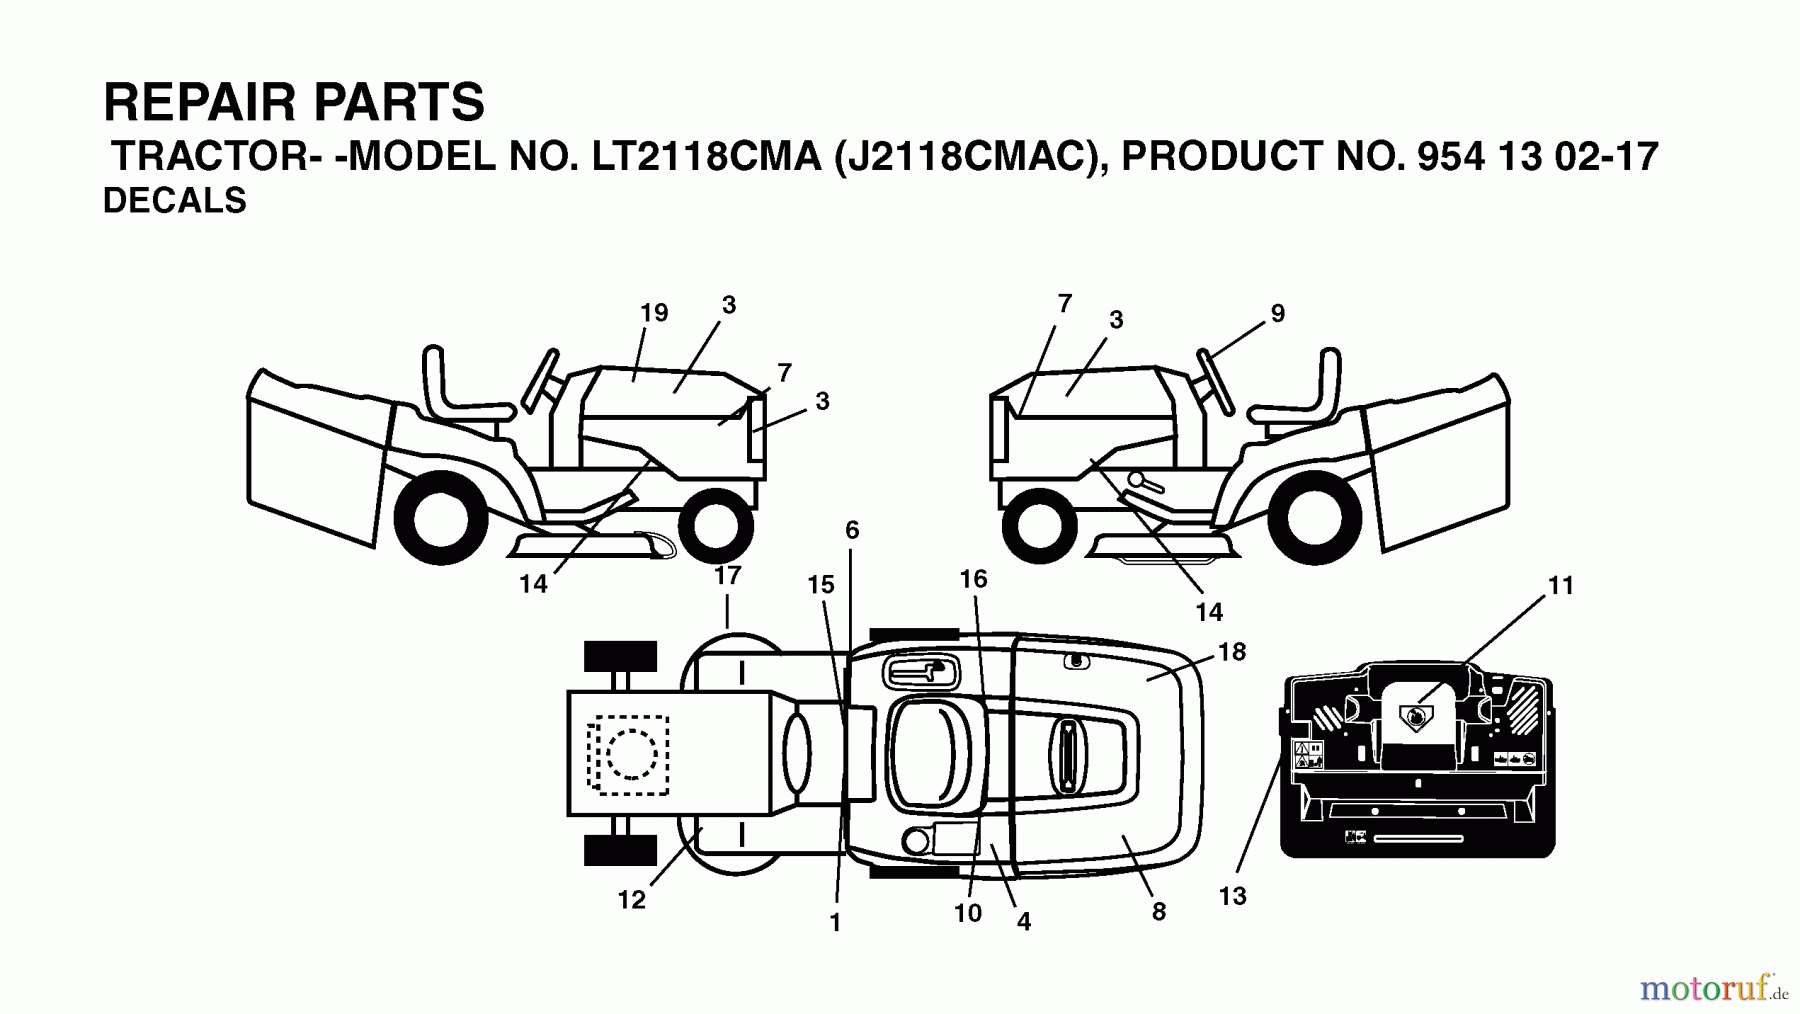  Jonsered Rasen  und Garten Traktoren LT2118 CMA (J2118CMAC, 954130217) - Jonsered Lawn & Garden Tractor (2004-06) DECALS